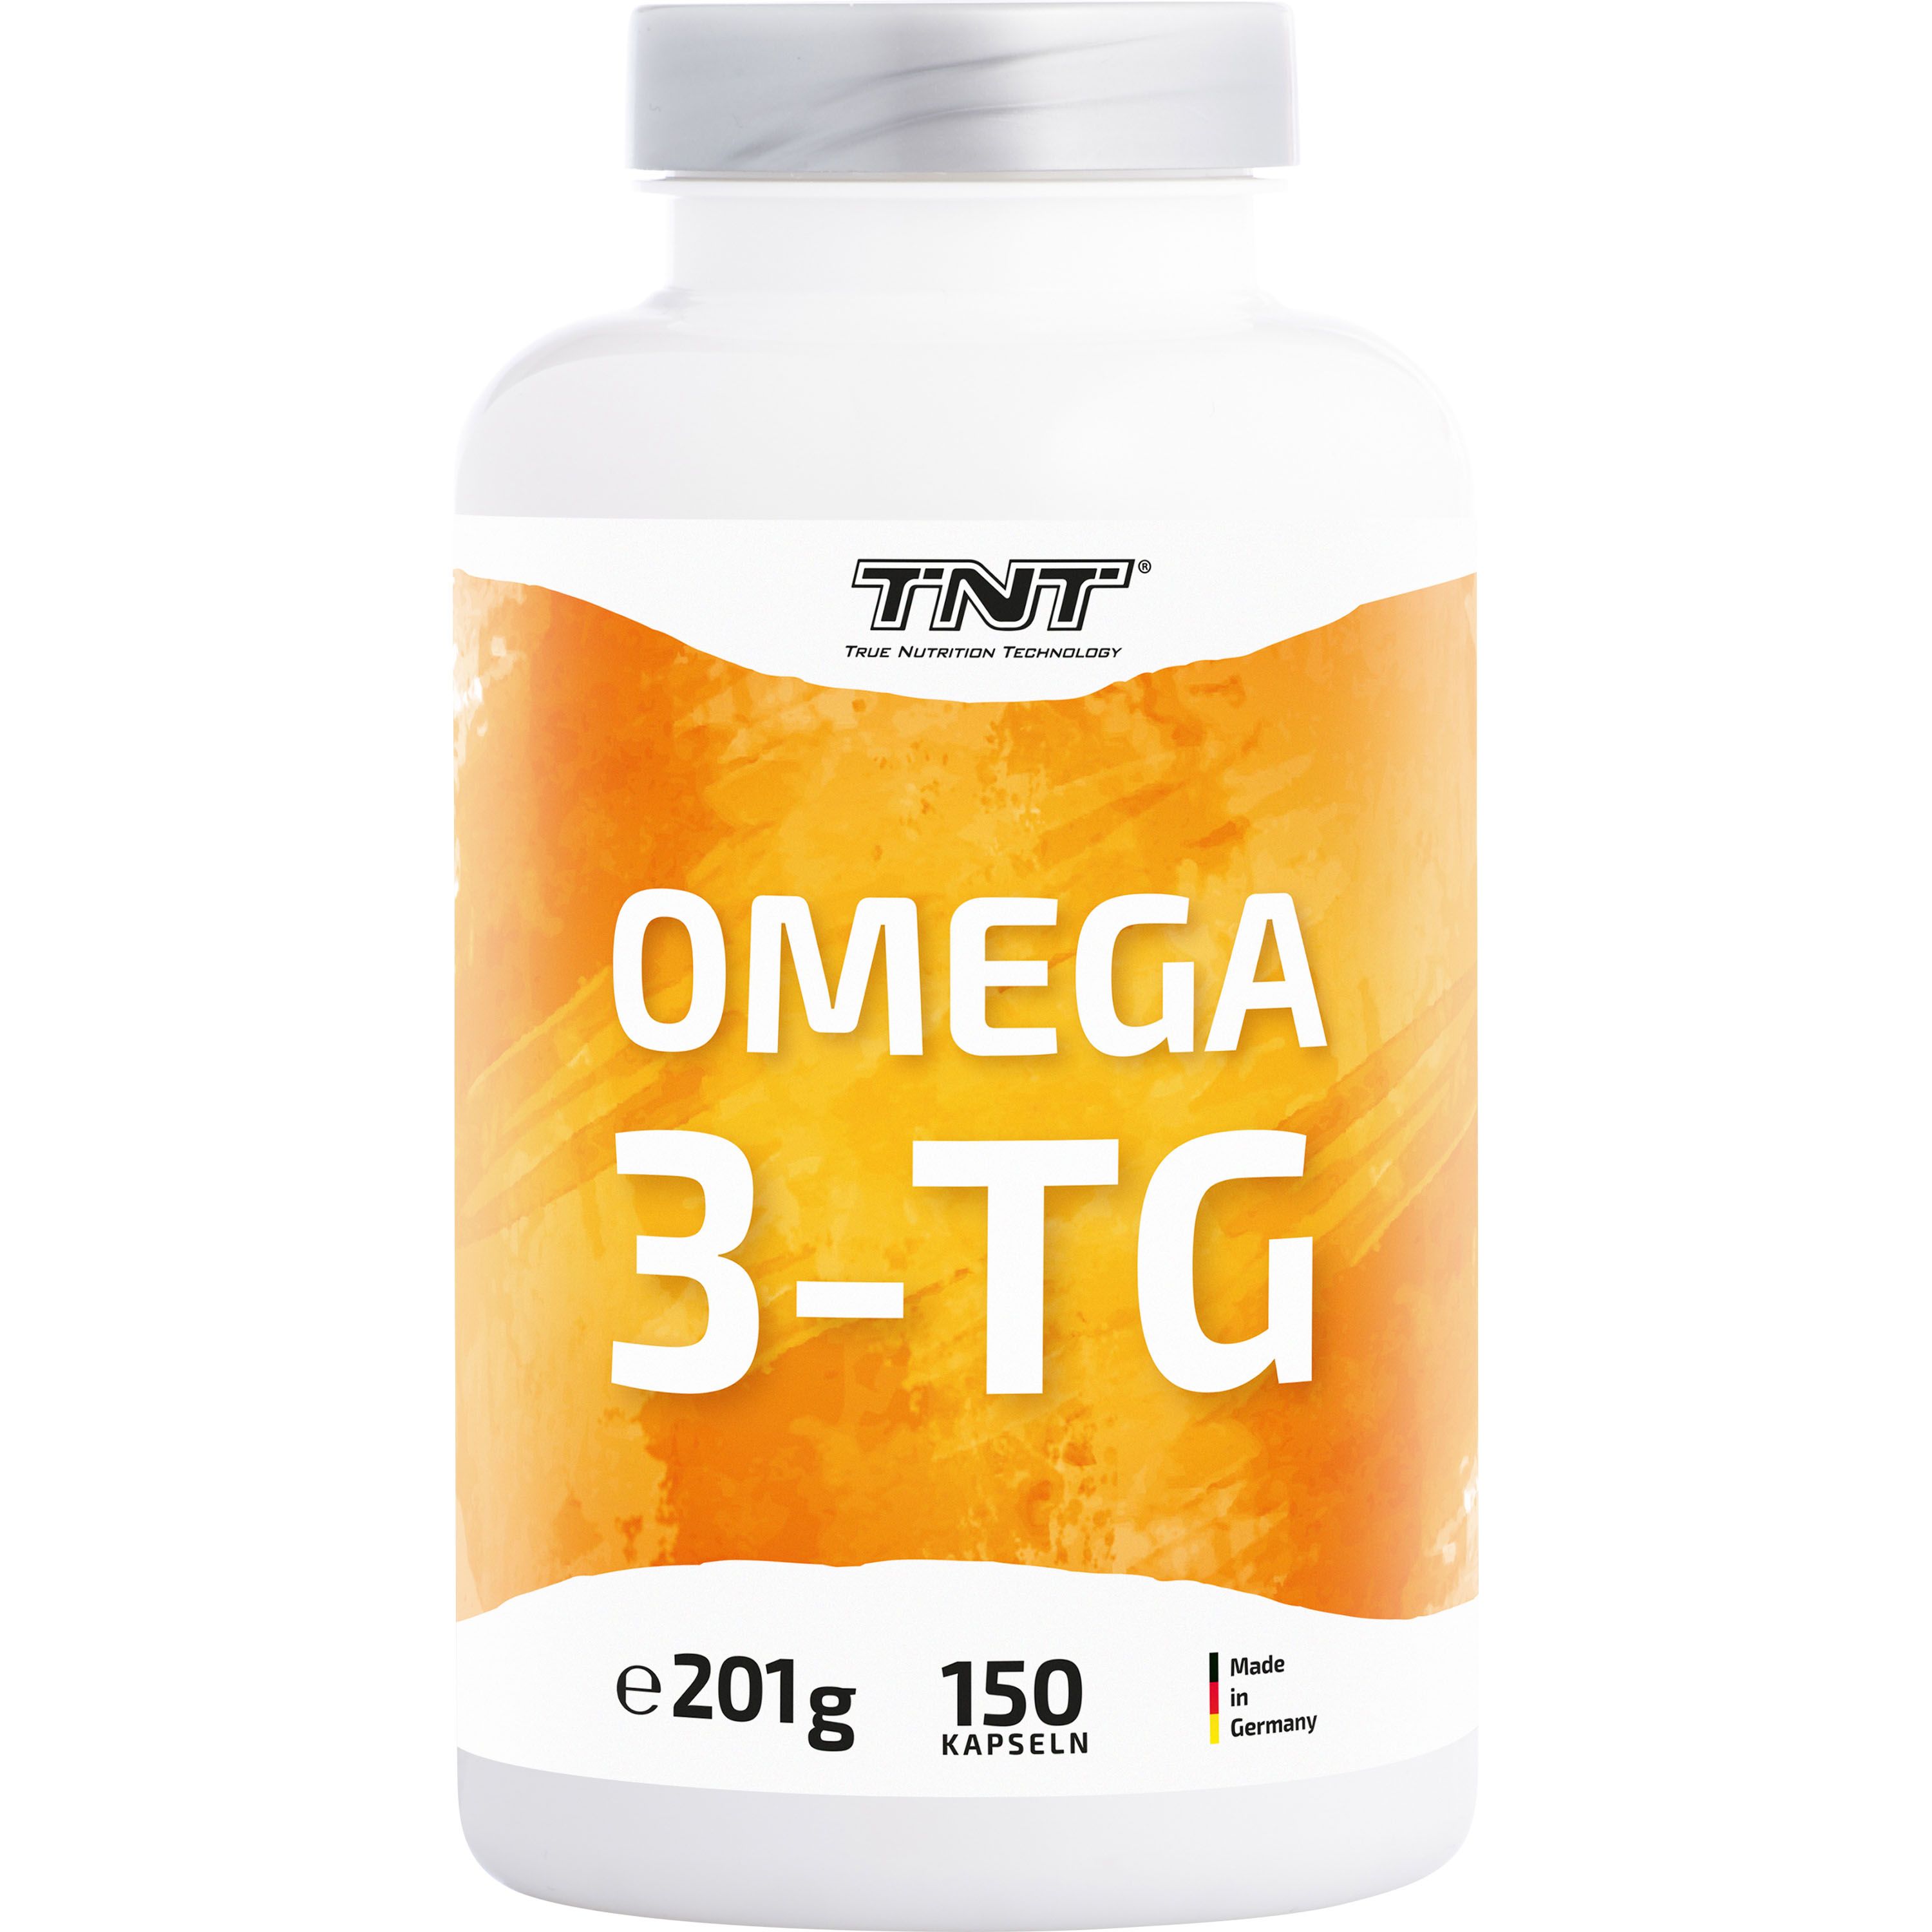 TNT Omega 3-Tg, Fischöl aus wilden Sardellen, wirkt entzündungshemmend